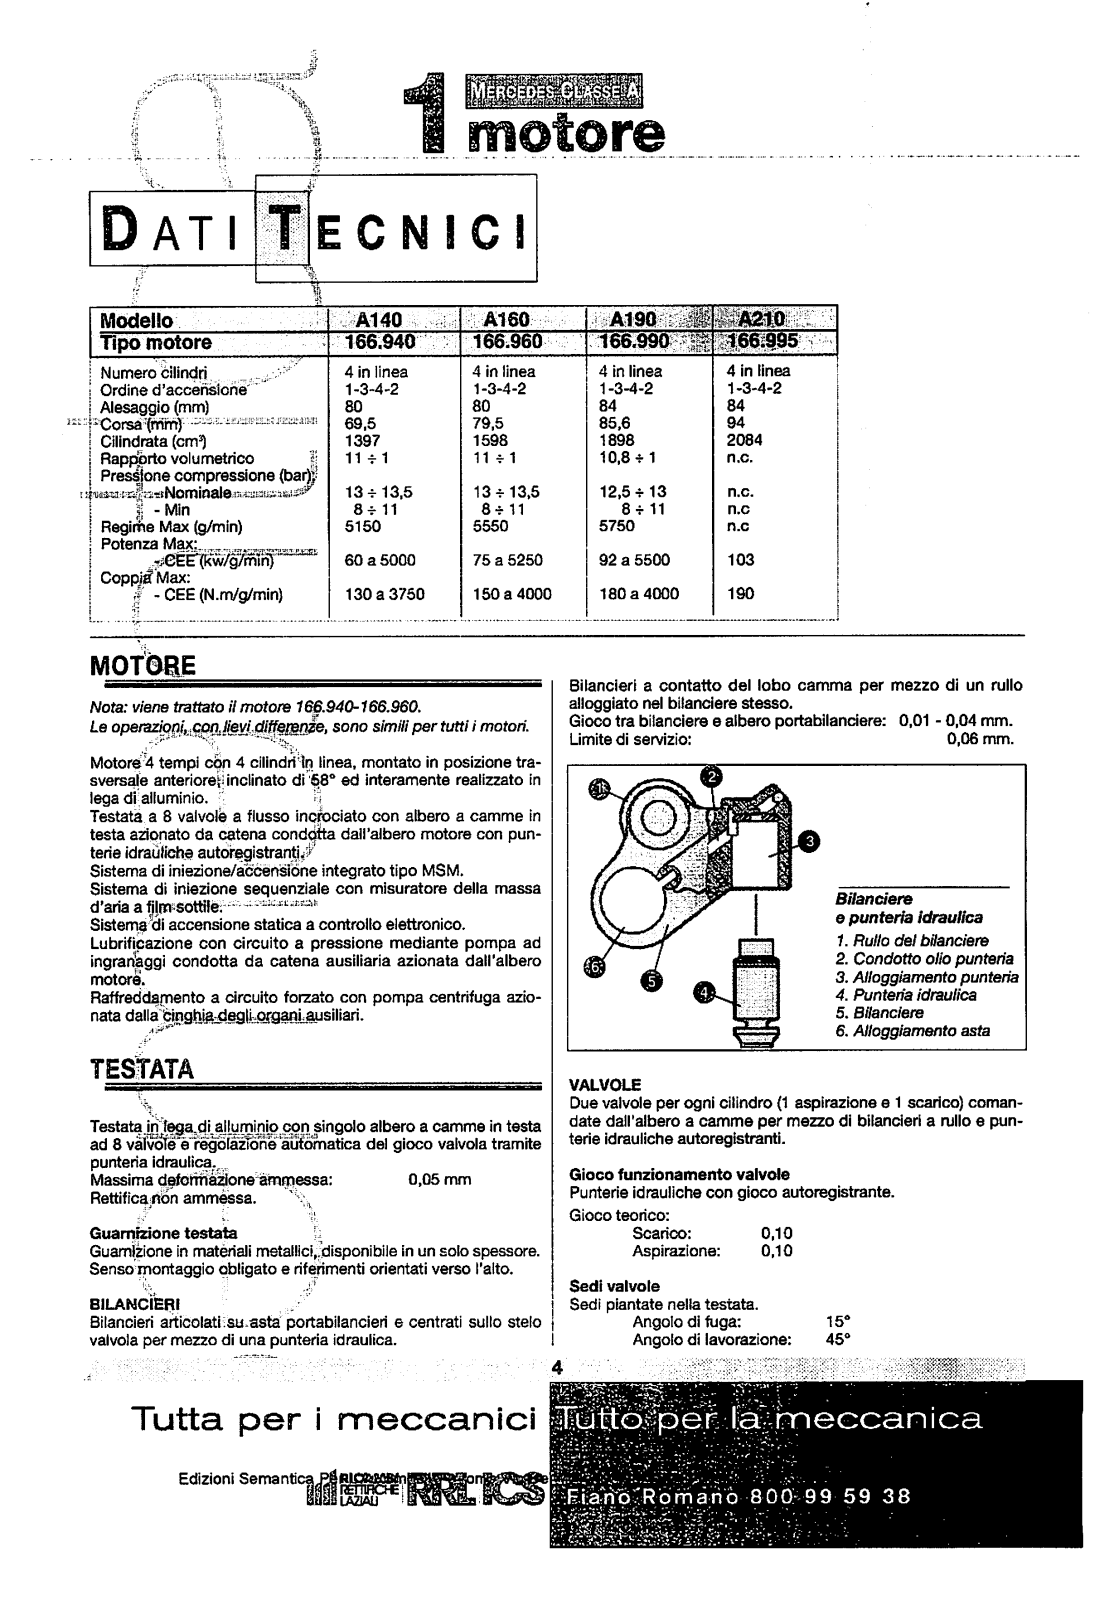 (W168): Manual técnico - tudo sobre - 1997 a 2004 - italiano Qrls7b